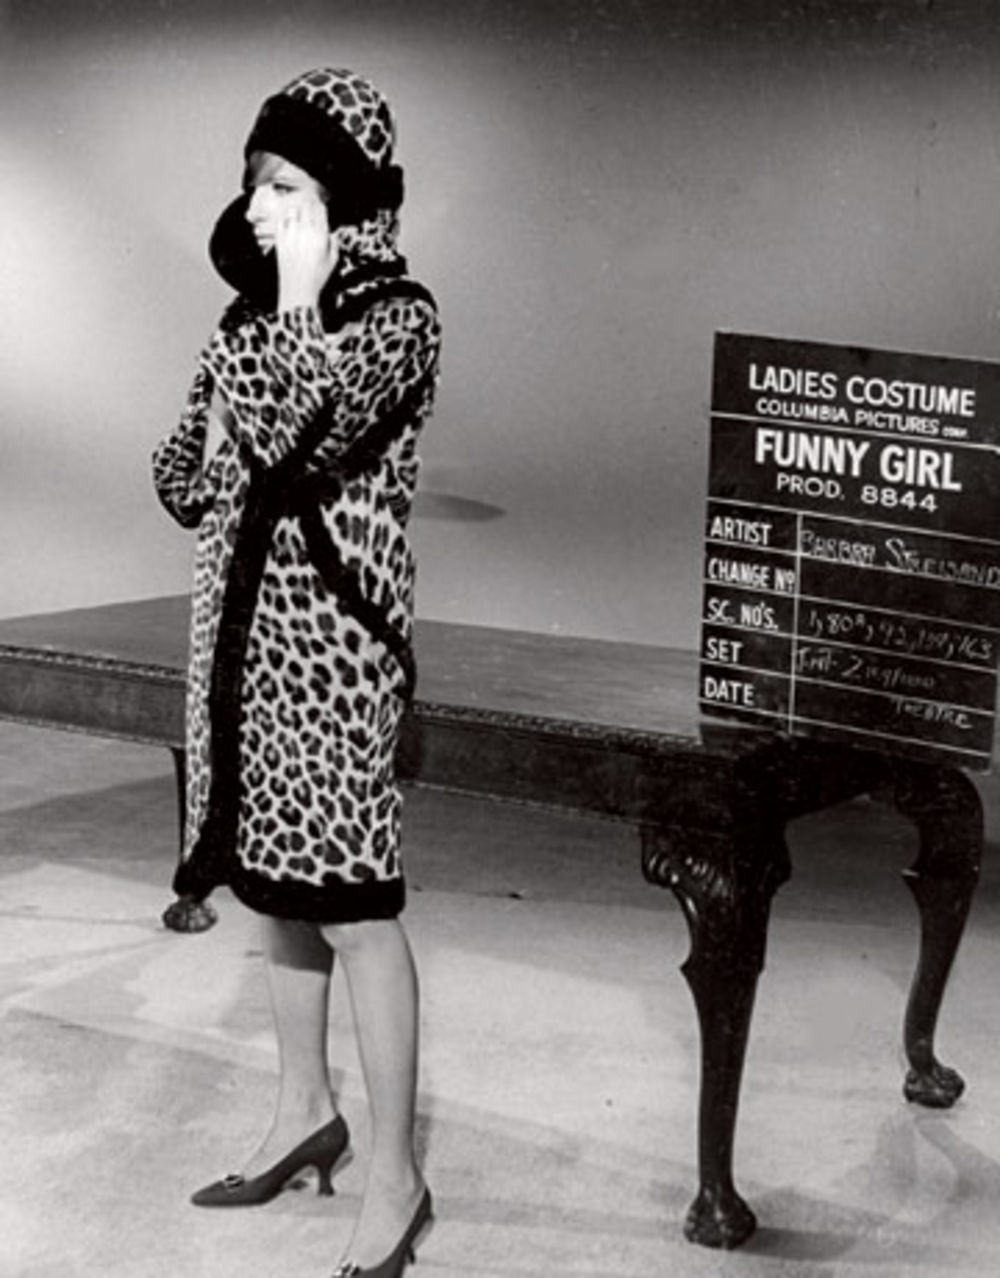 Američka glumica Dženifer Eniston slikala se za naslovnu stranu magazina Harper’s Bazaar odevena u kombinacije koje su proslavile jednu od ikona dvadesetog veka, slavnu Barabru Strejsend